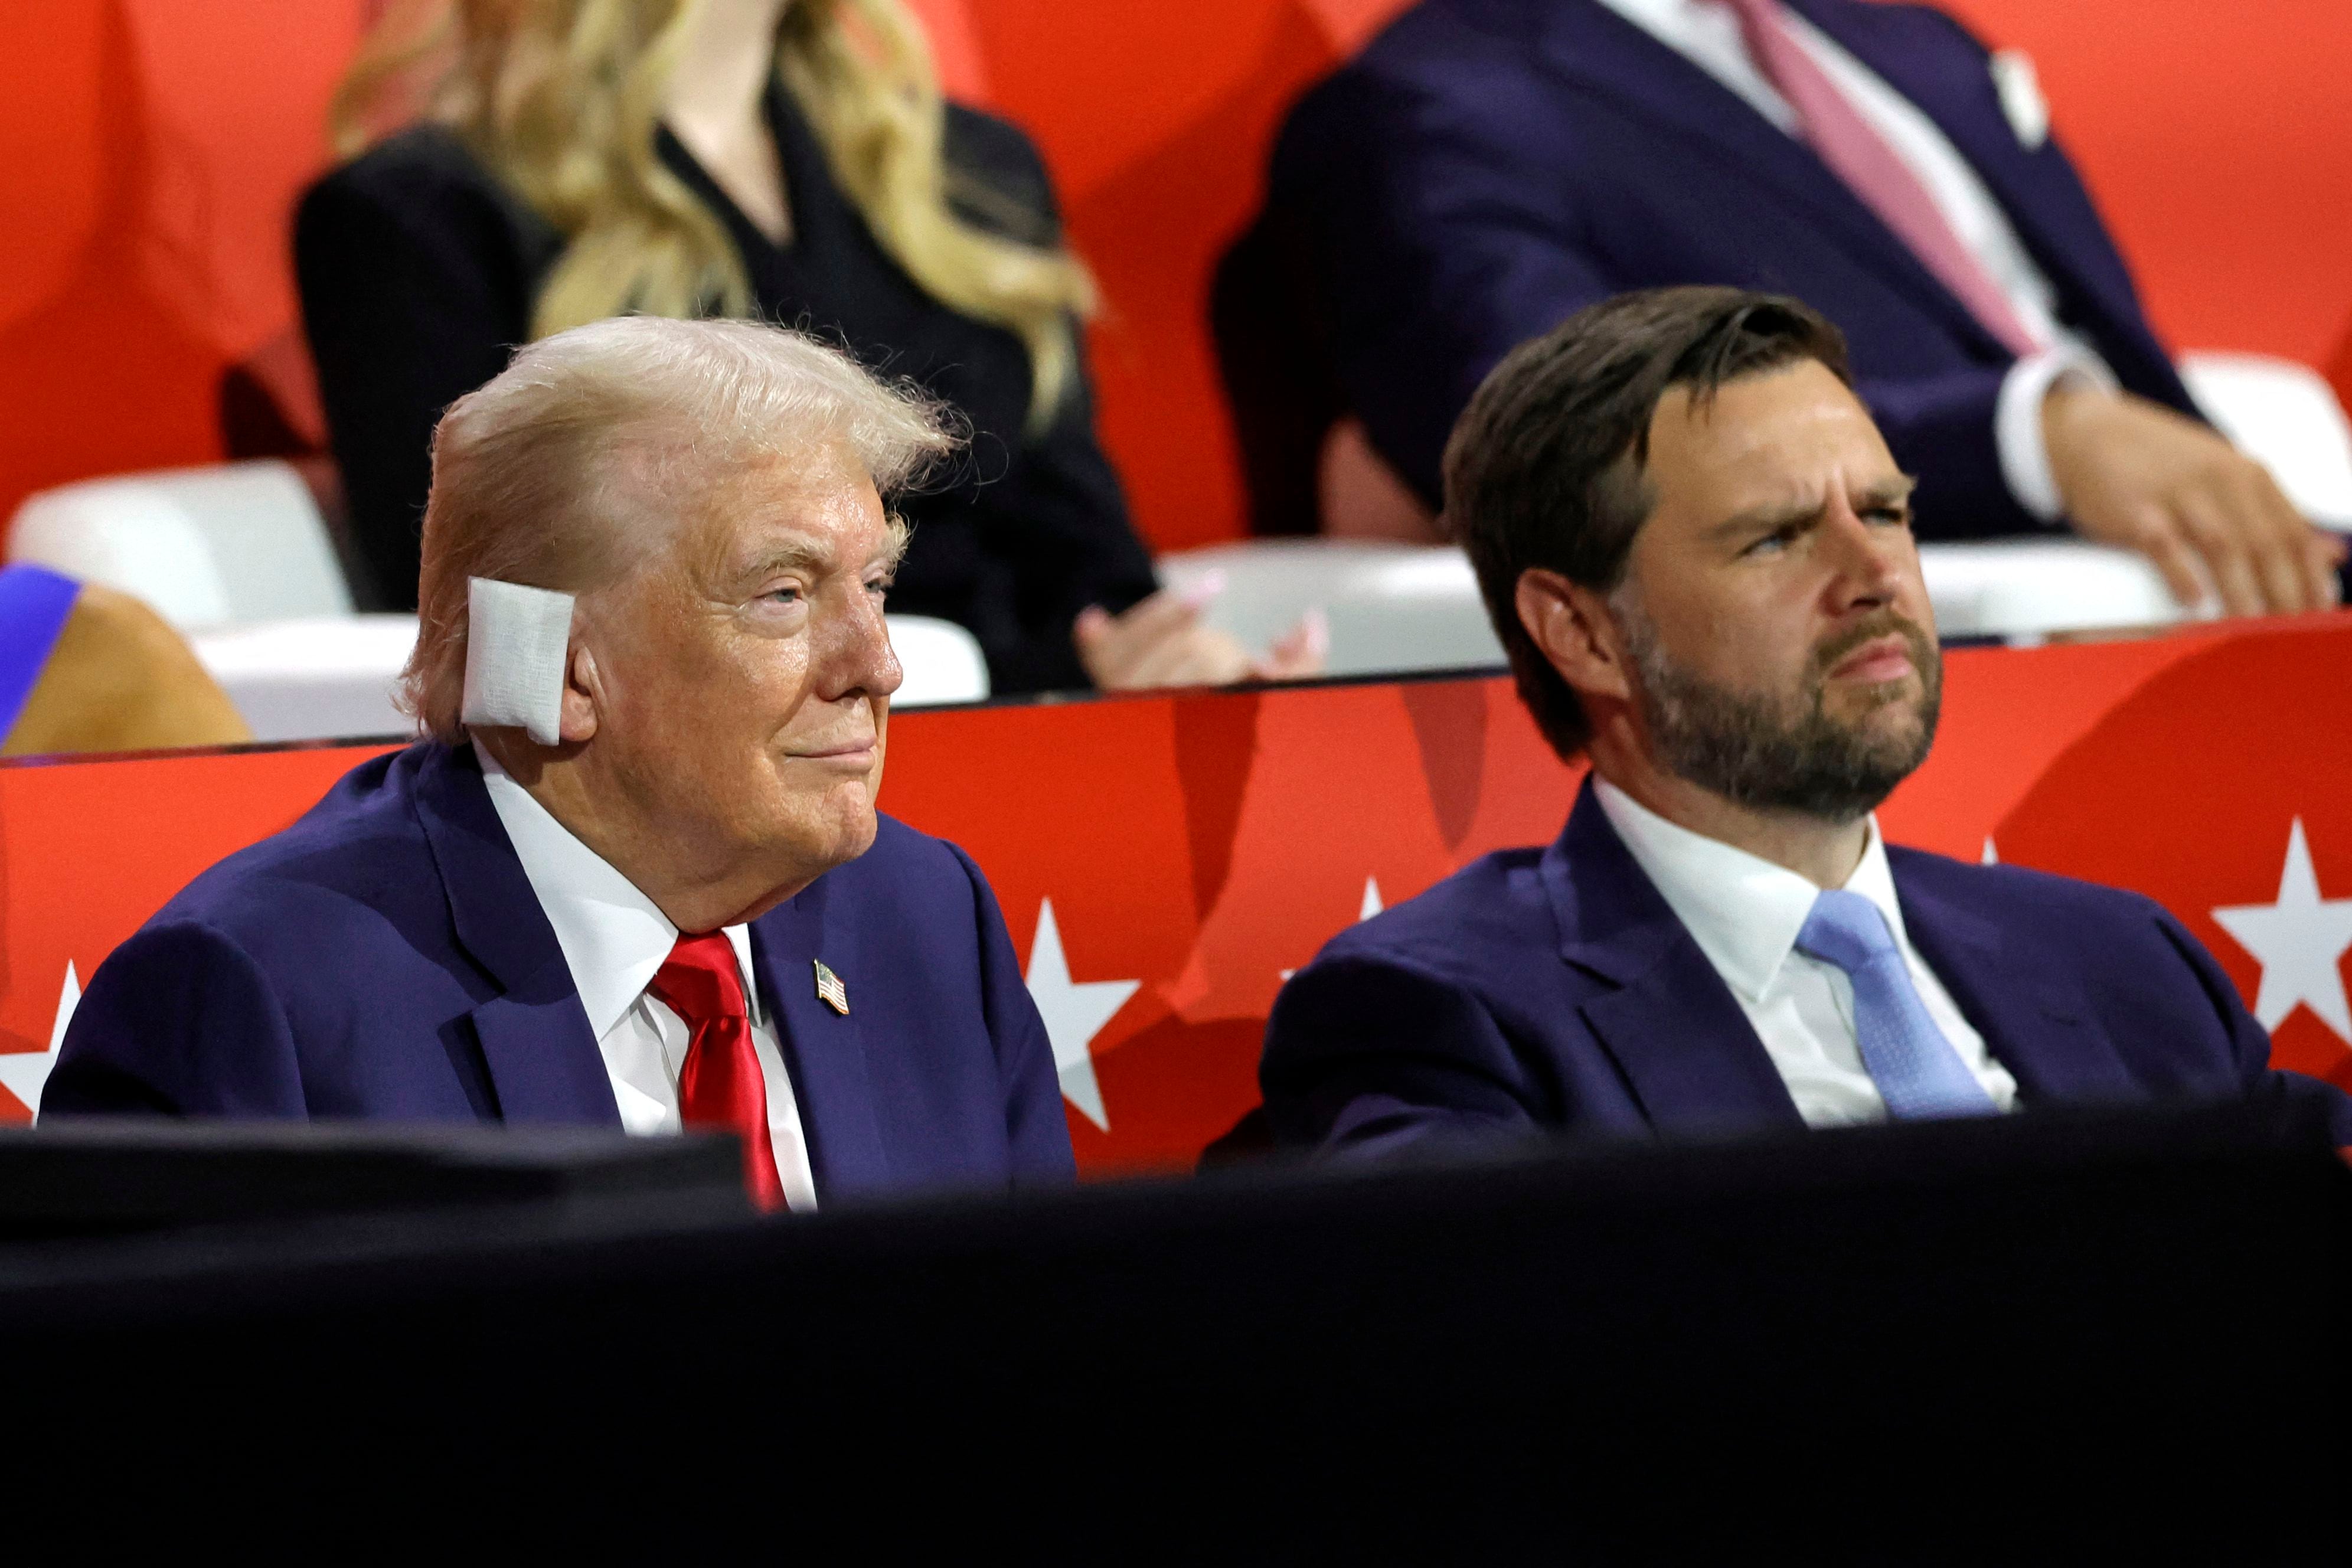 El expresidente estadounidense y candidato presidencial republicano, Donald Trump (izq.), se sienta junto al senador estadounidense de Ohio y al candidato republicano a vicepresidente, J. D. Vance, durante el primer día de la Convención Nacional Republicana de 2024.